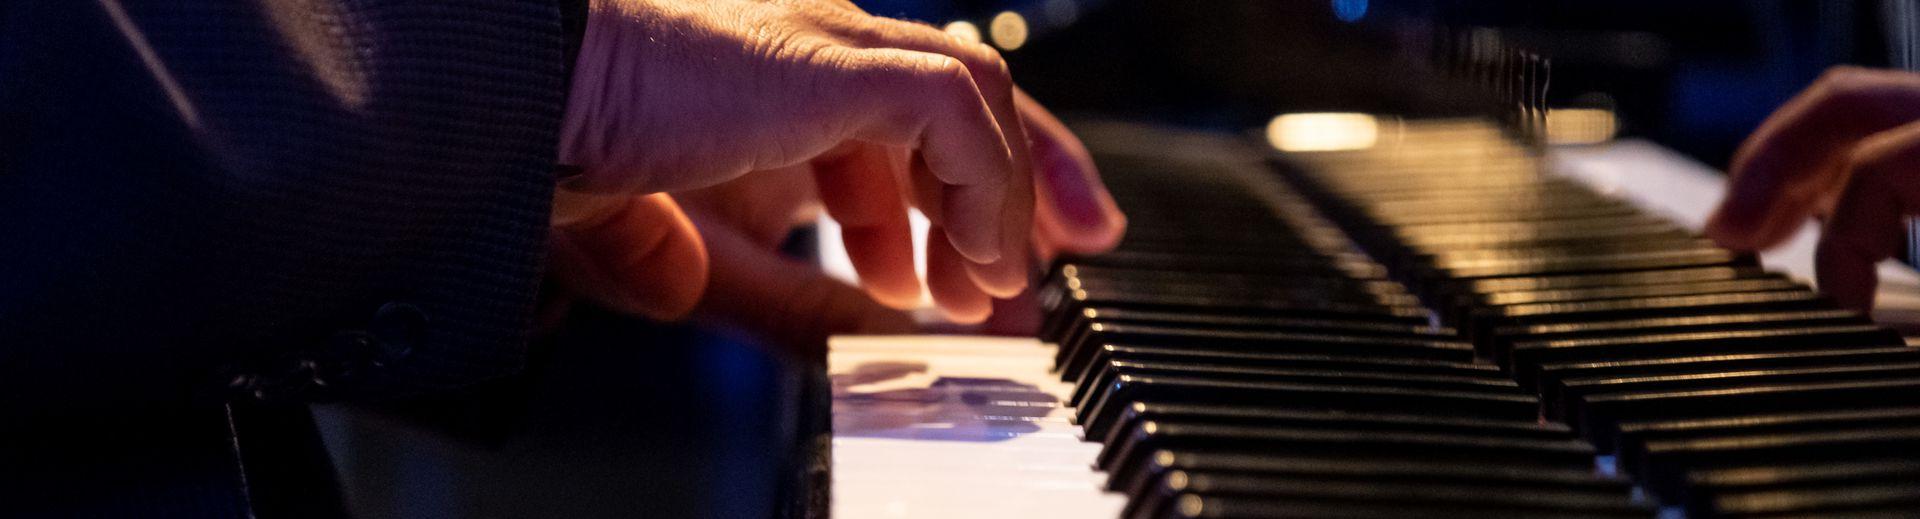 钢琴师在施坦威三角钢琴演奏时的双手